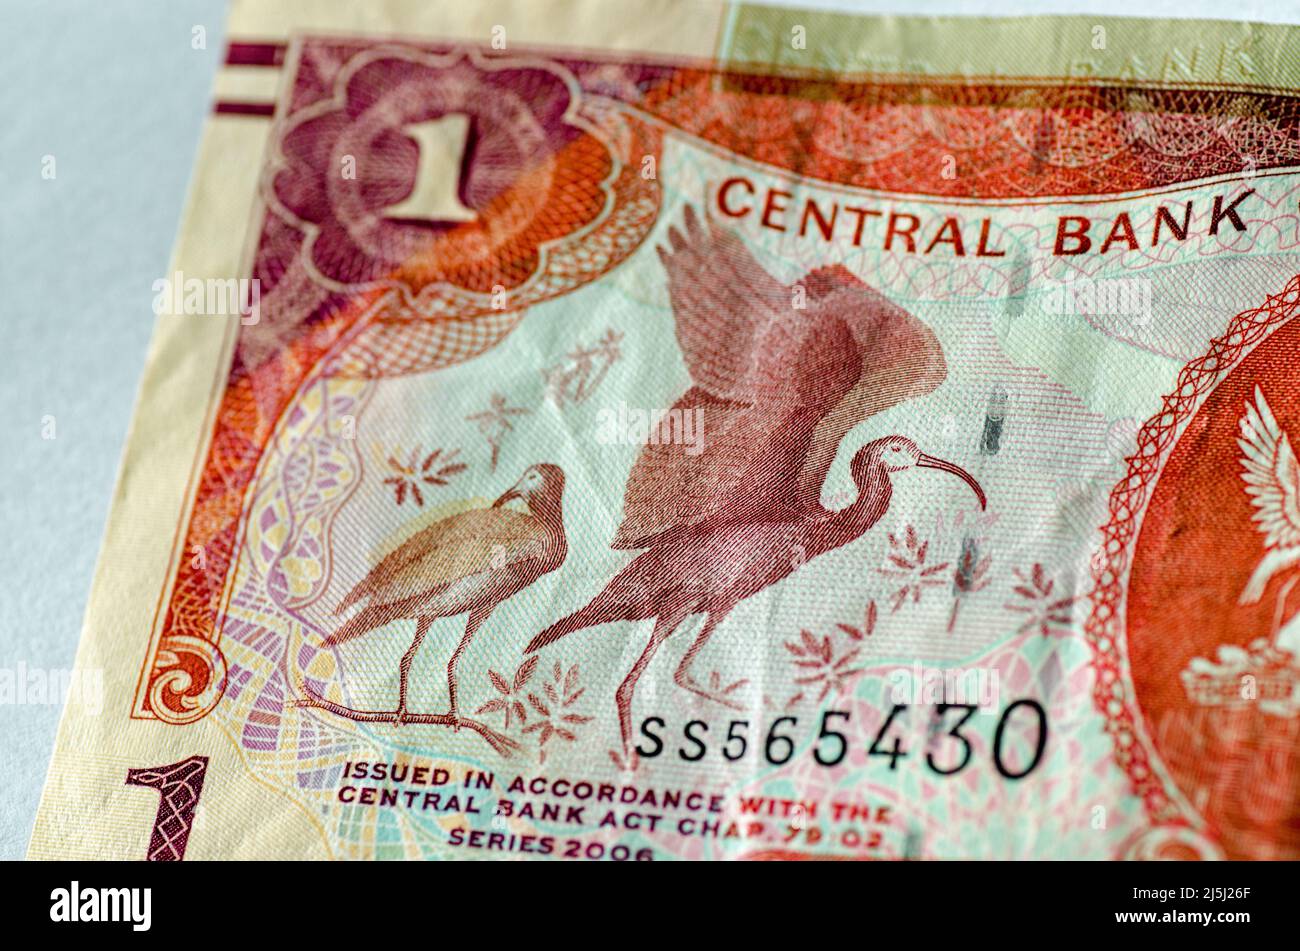 Detalle de un billete de un dólar de Trinidad y Tobago que muestra las aves Scarlet Ibis (Eudocimus ruber) y algunas plantas. Billete usado, fotografiado Foto de stock